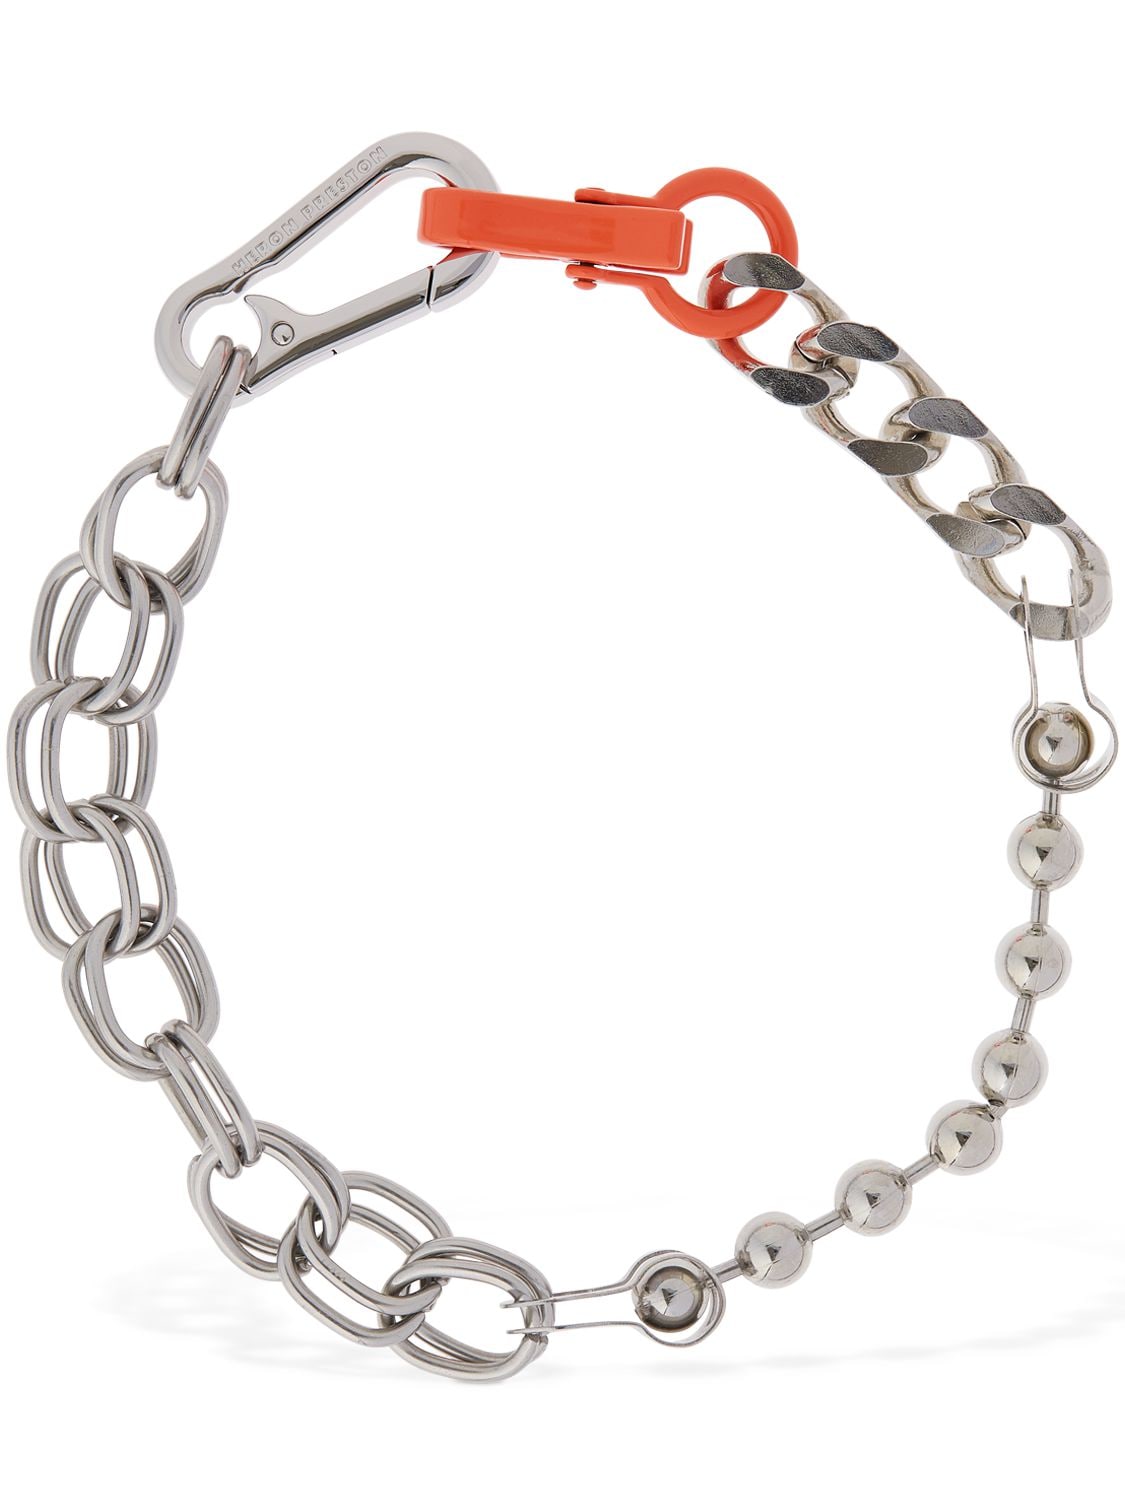 Heron Preston Multichain Necklace W/ Orange Closure In Silver,orange